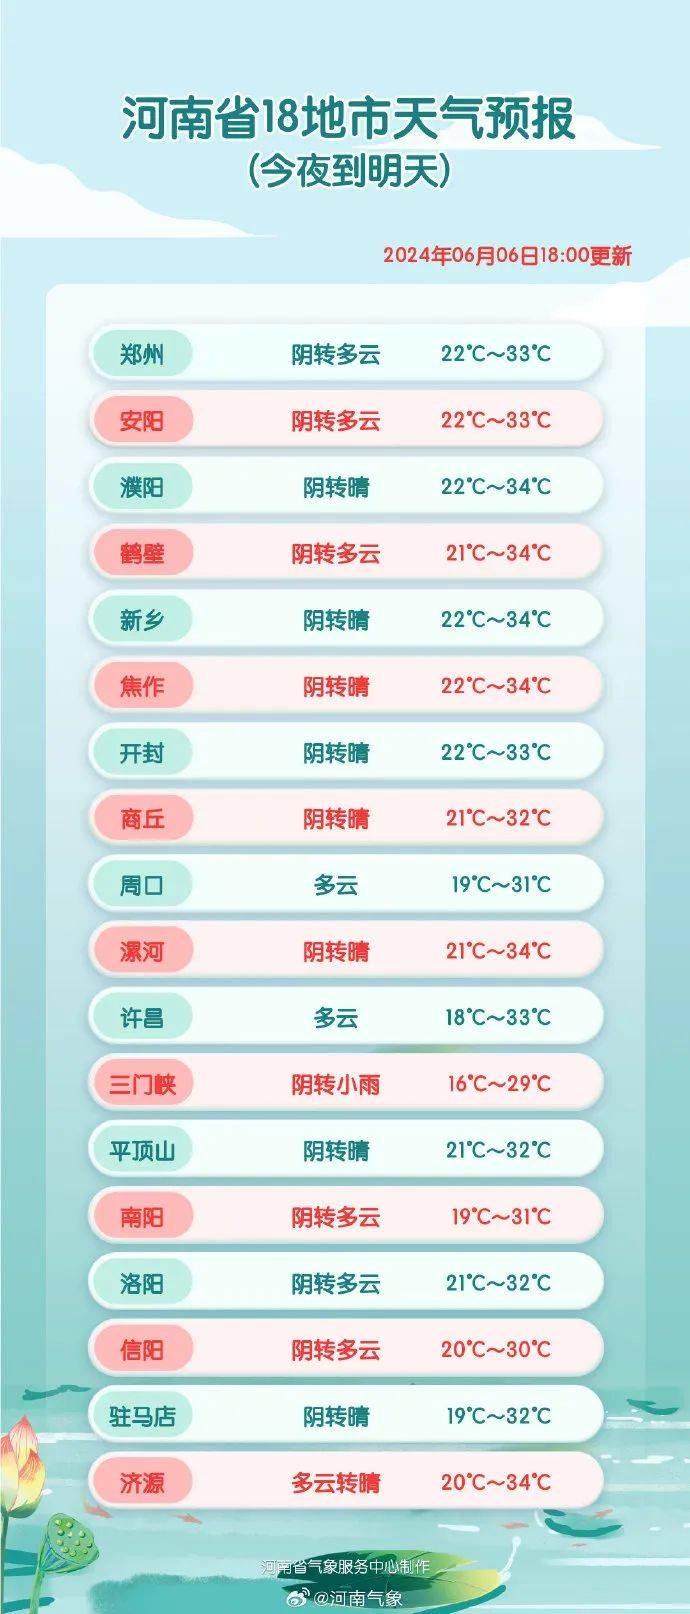 今起4天,郑州地铁运营有变化/中国气象局发布河南极易发生中暑提醒